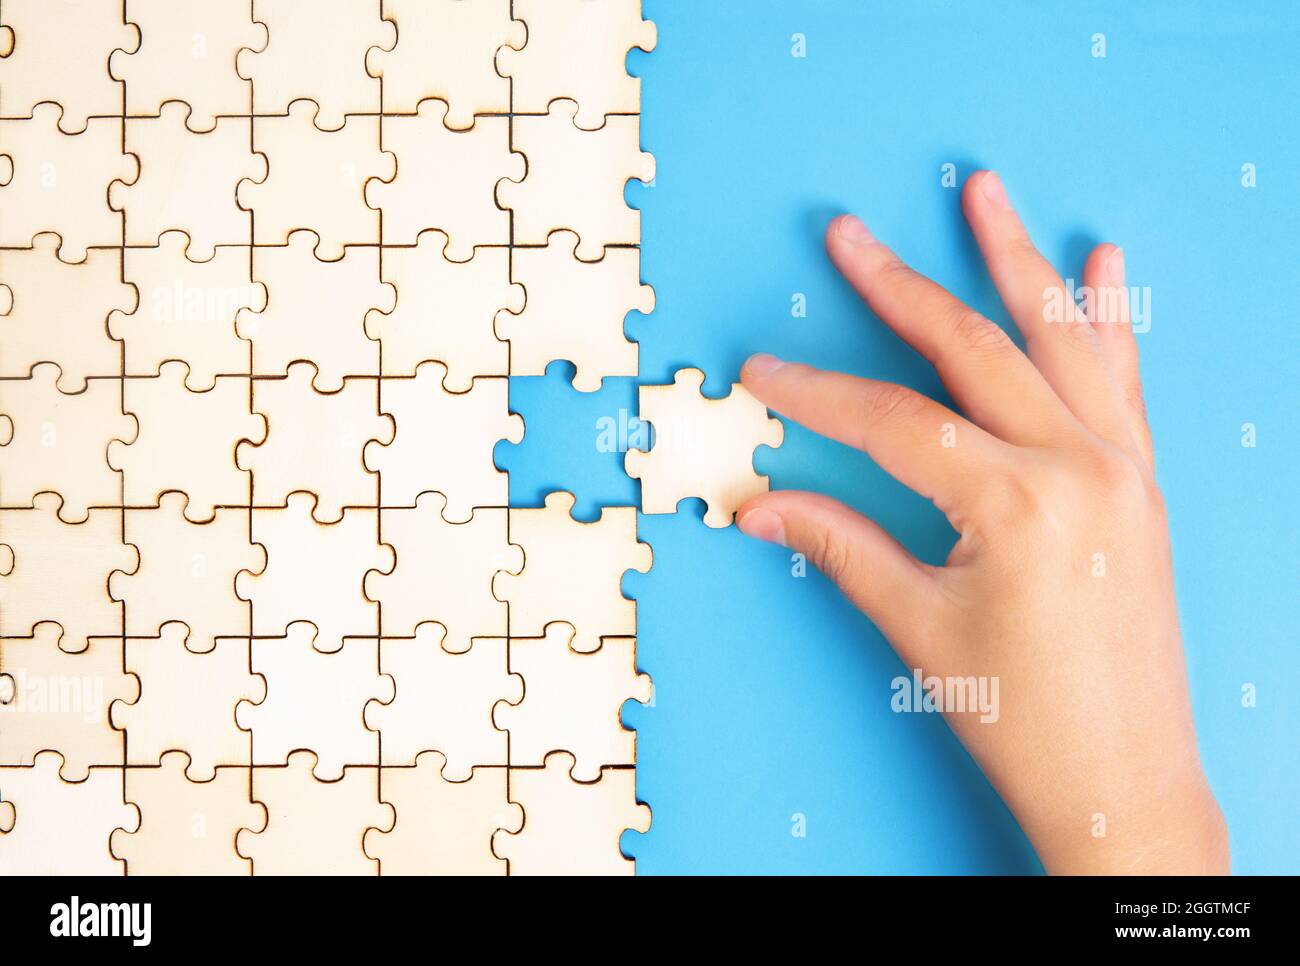 Weibliche Hand, die das letzte Puzzleteil in Position setzt. Abschlusskonzept. Stockfoto